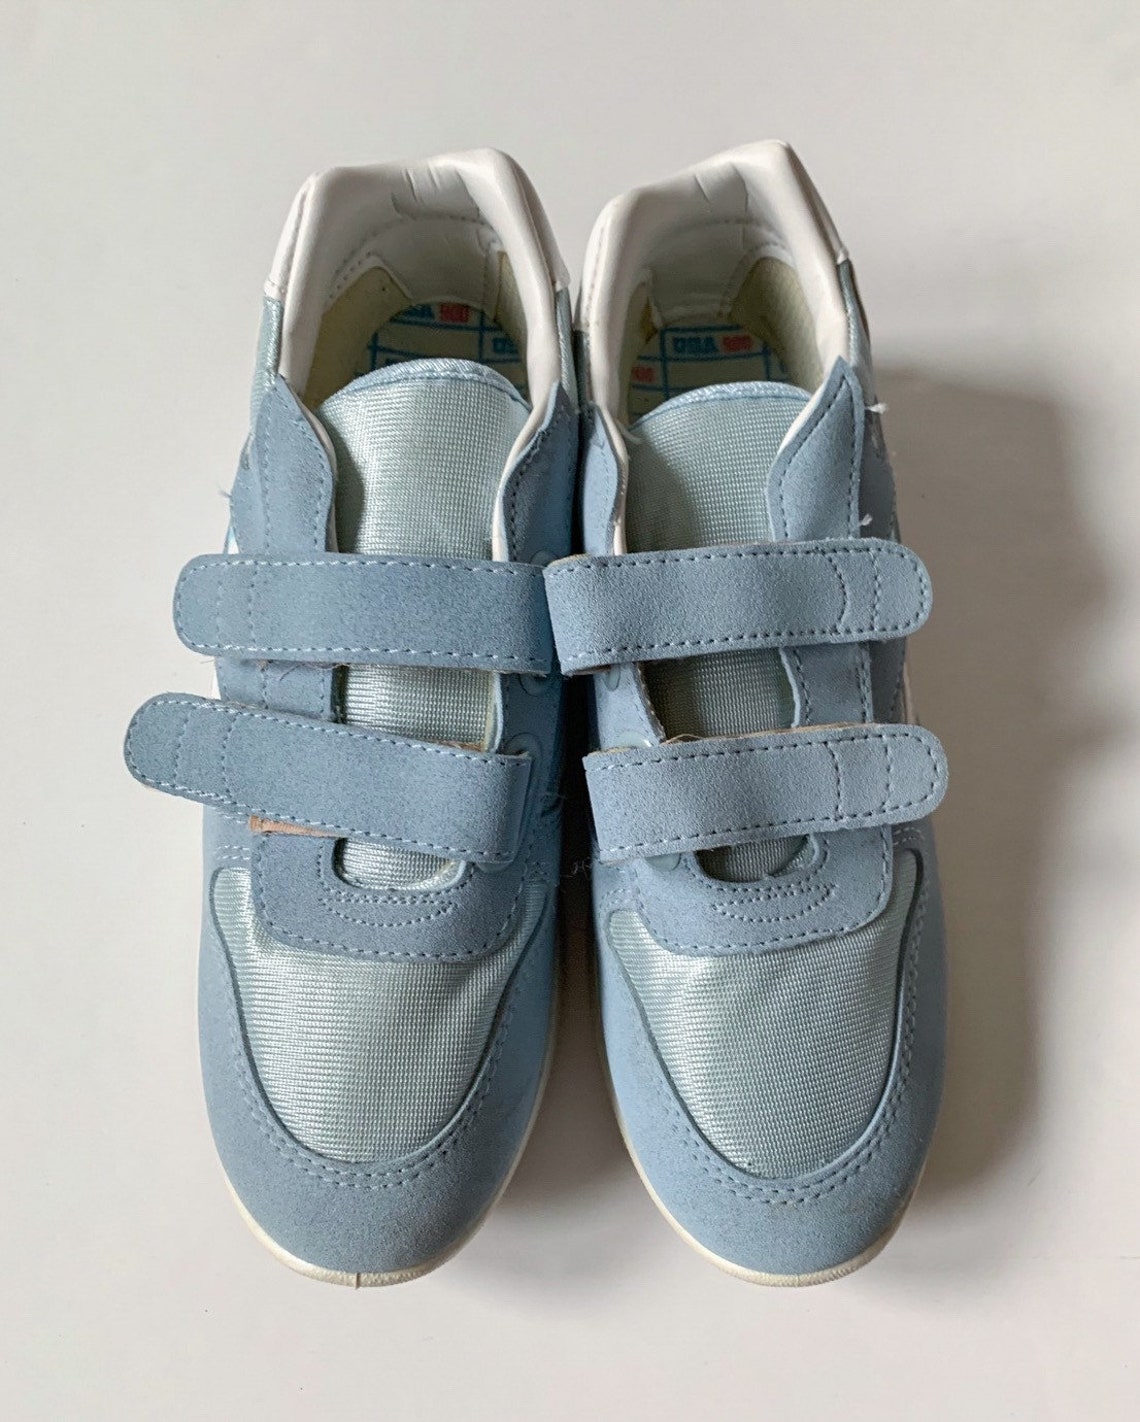 Vintage 1980s pastel blue Velcro tennis shoes / 80s blue | Etsy